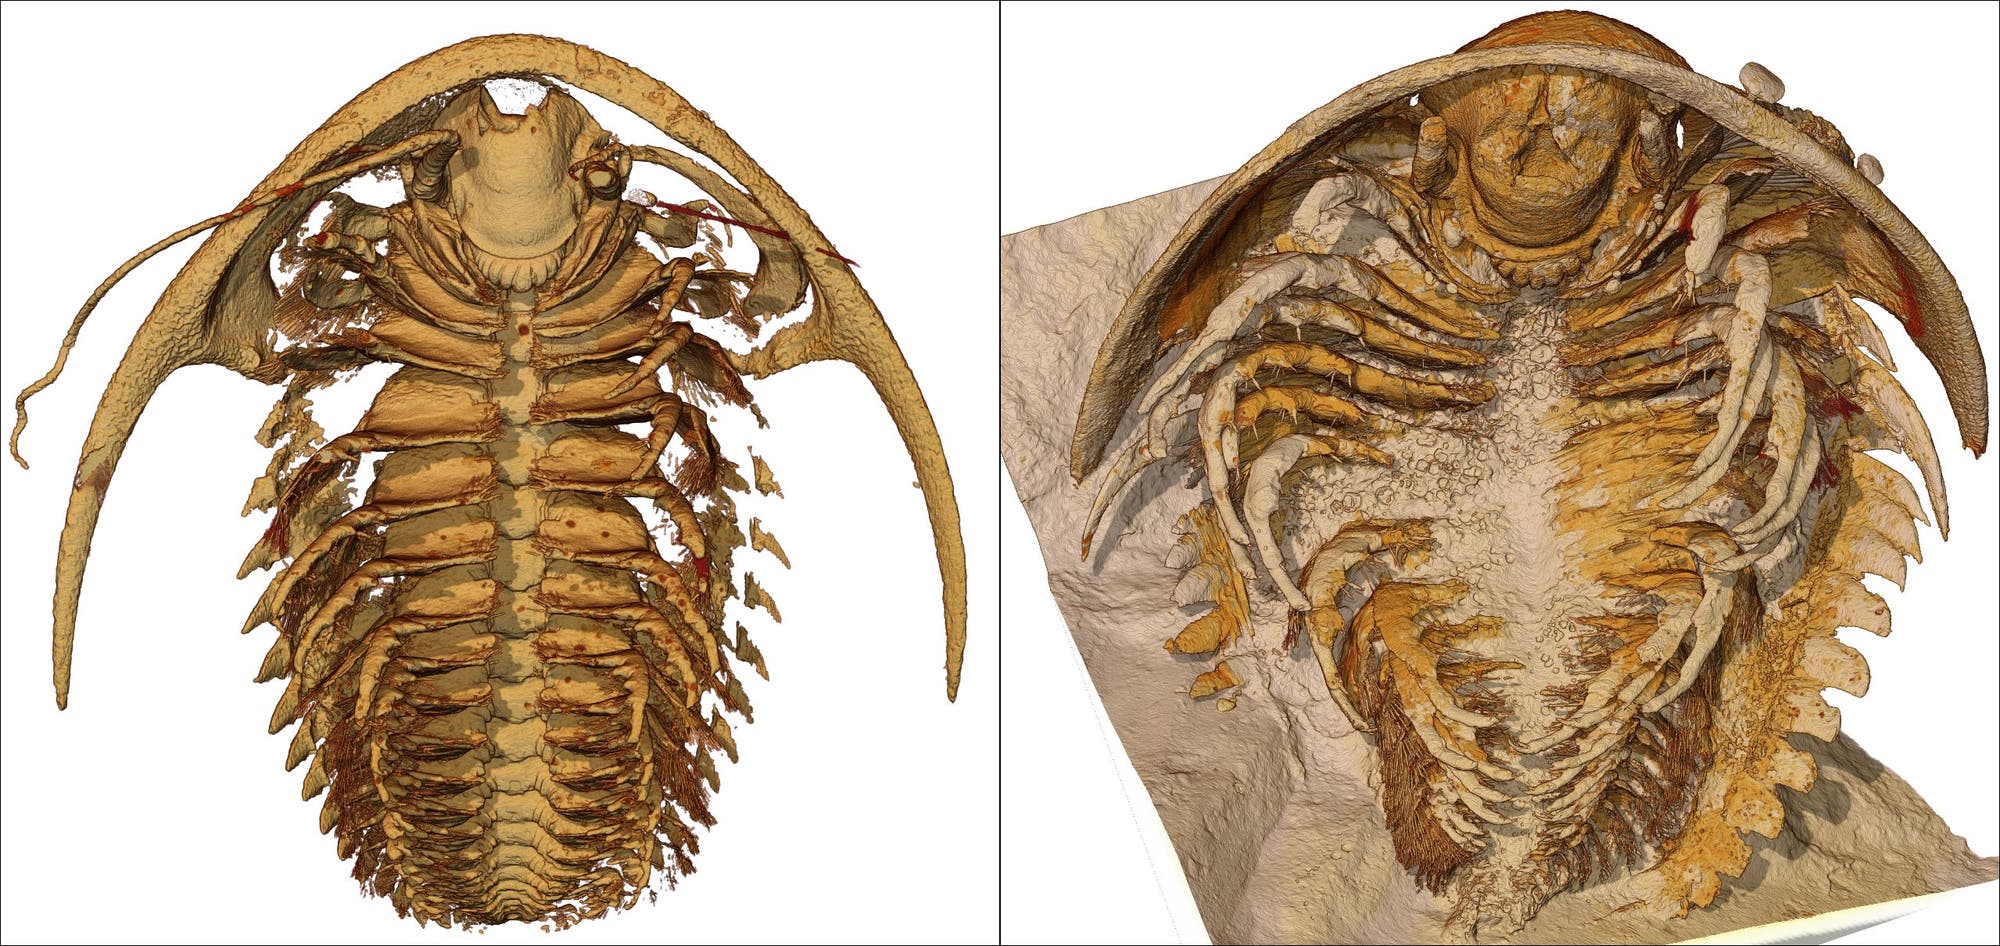 Unterseite eines rekonstruierten Trilobiten in verschiedenen Braun- und Beigetönen: Erkennbar sind viele Beinpaare, der Kopf und der Kopfschild.